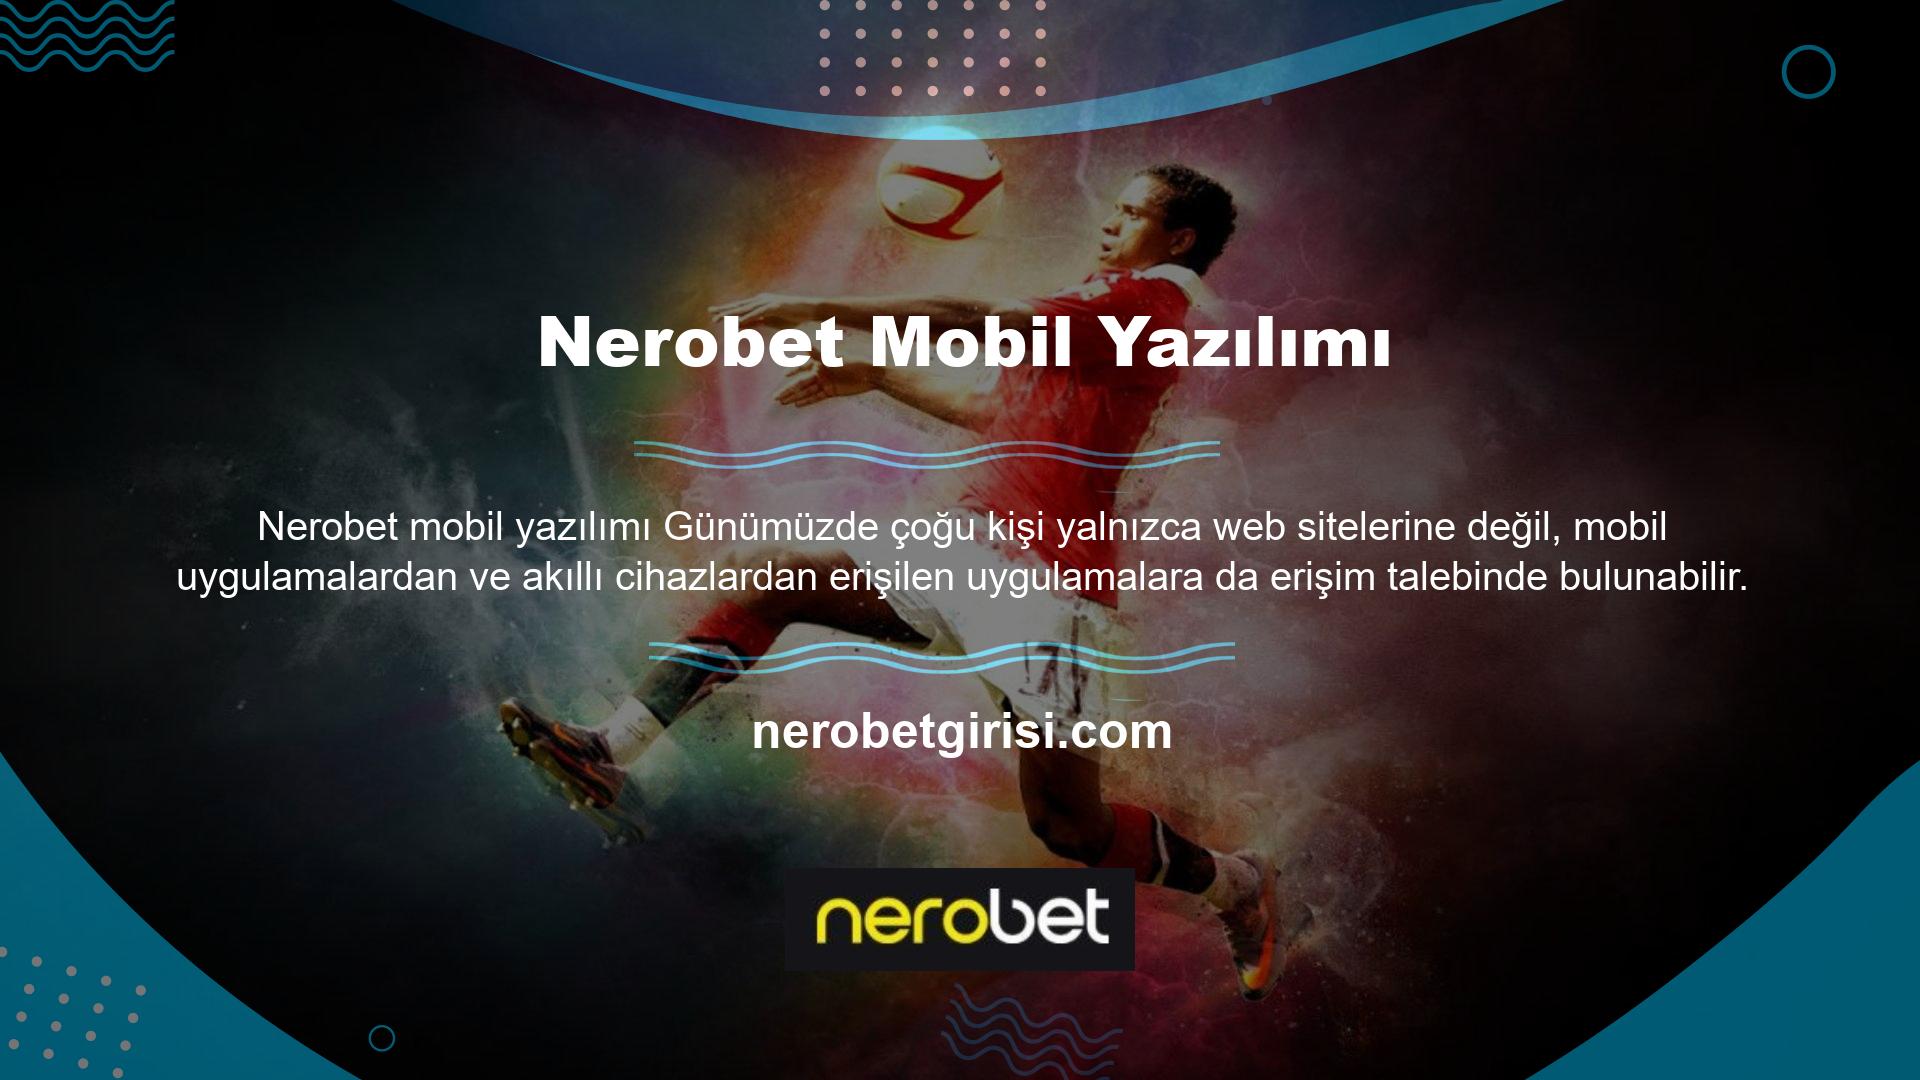 Bu durumda Nerobet Mobil Yazılım oldukça iyi çalışmaktadır ve site uygulamasında bulunan tüm özellikler Nerobet Mobil Yazılım içerisinde mevcuttur